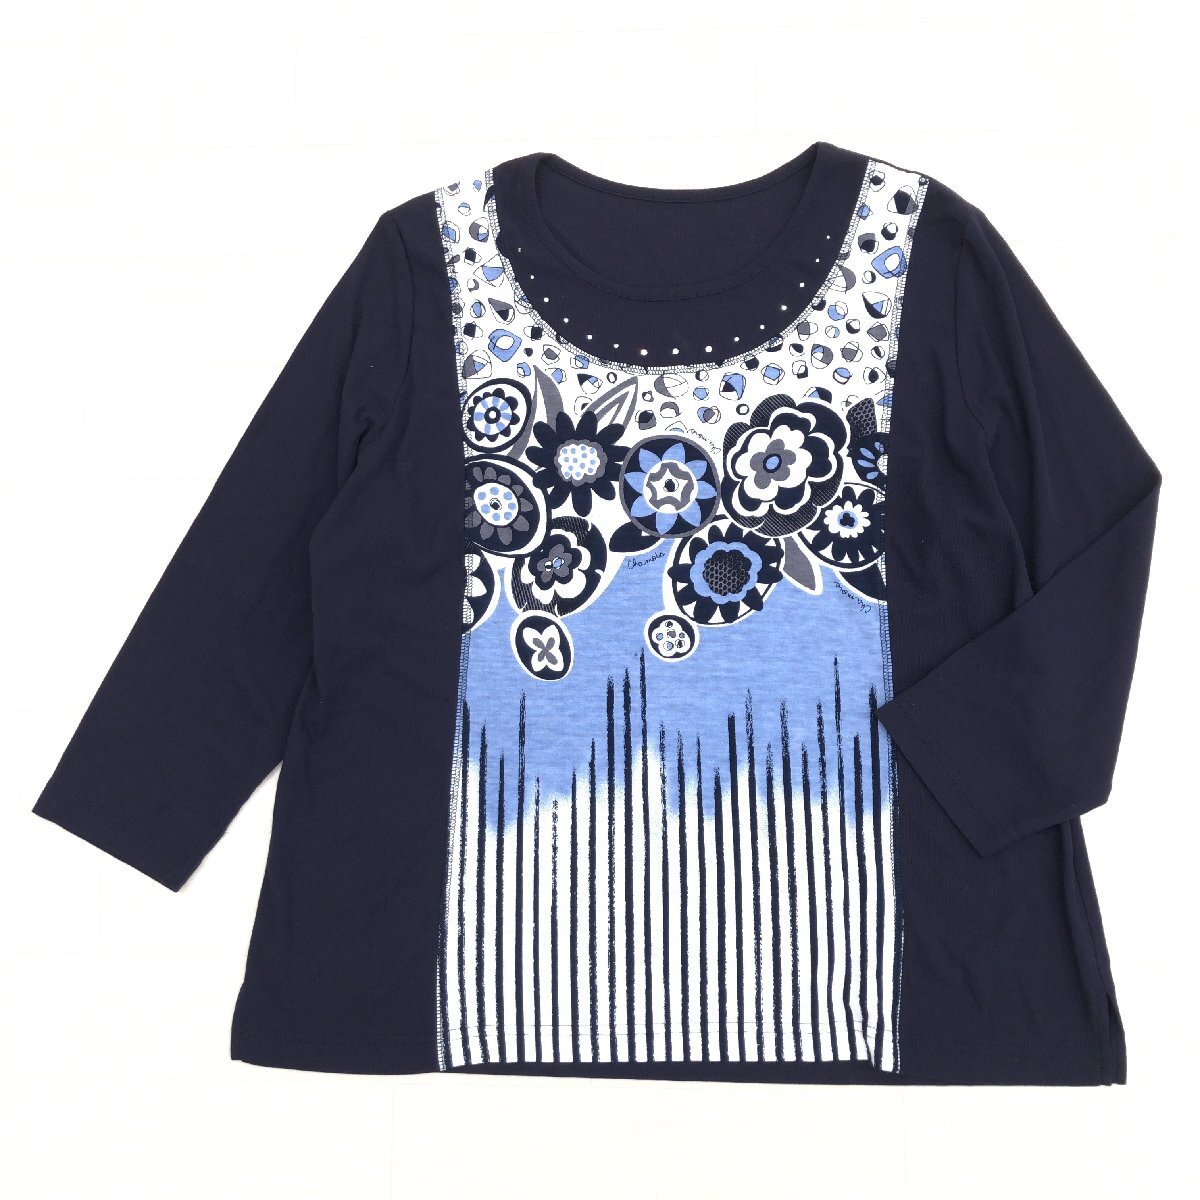 美品 Chamois シャミー コットン100% ビジュー装飾 カットソー 44(2XL) ネイビー系 日本製 ロンT Tシャツ 3L ゆったり 大きい ジオン商事の画像1